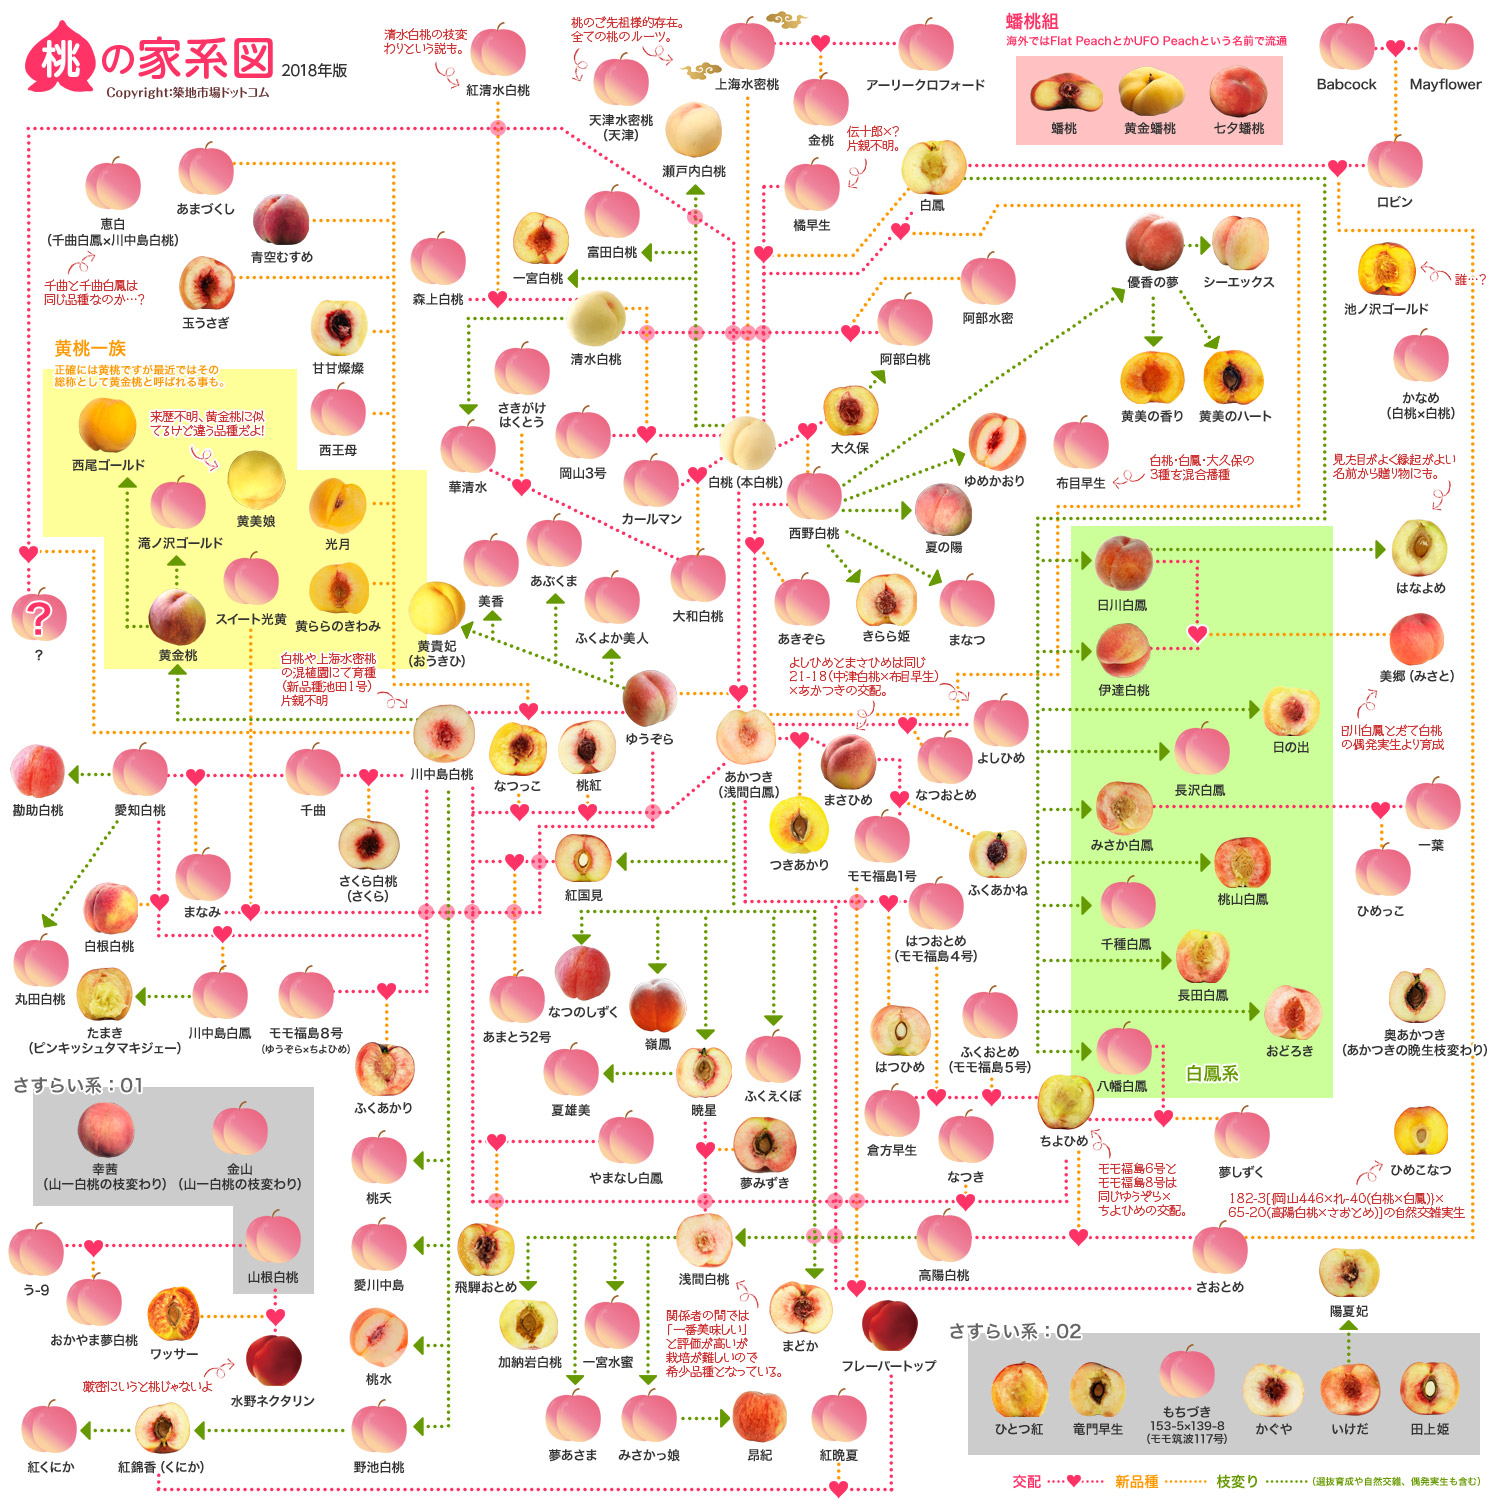 桃の家系図18 全143品種のうち63品種を新たに追加 桃の断面図に差し替えでバージョンアップしたよー O Toyosu Blog 市場から情報発信